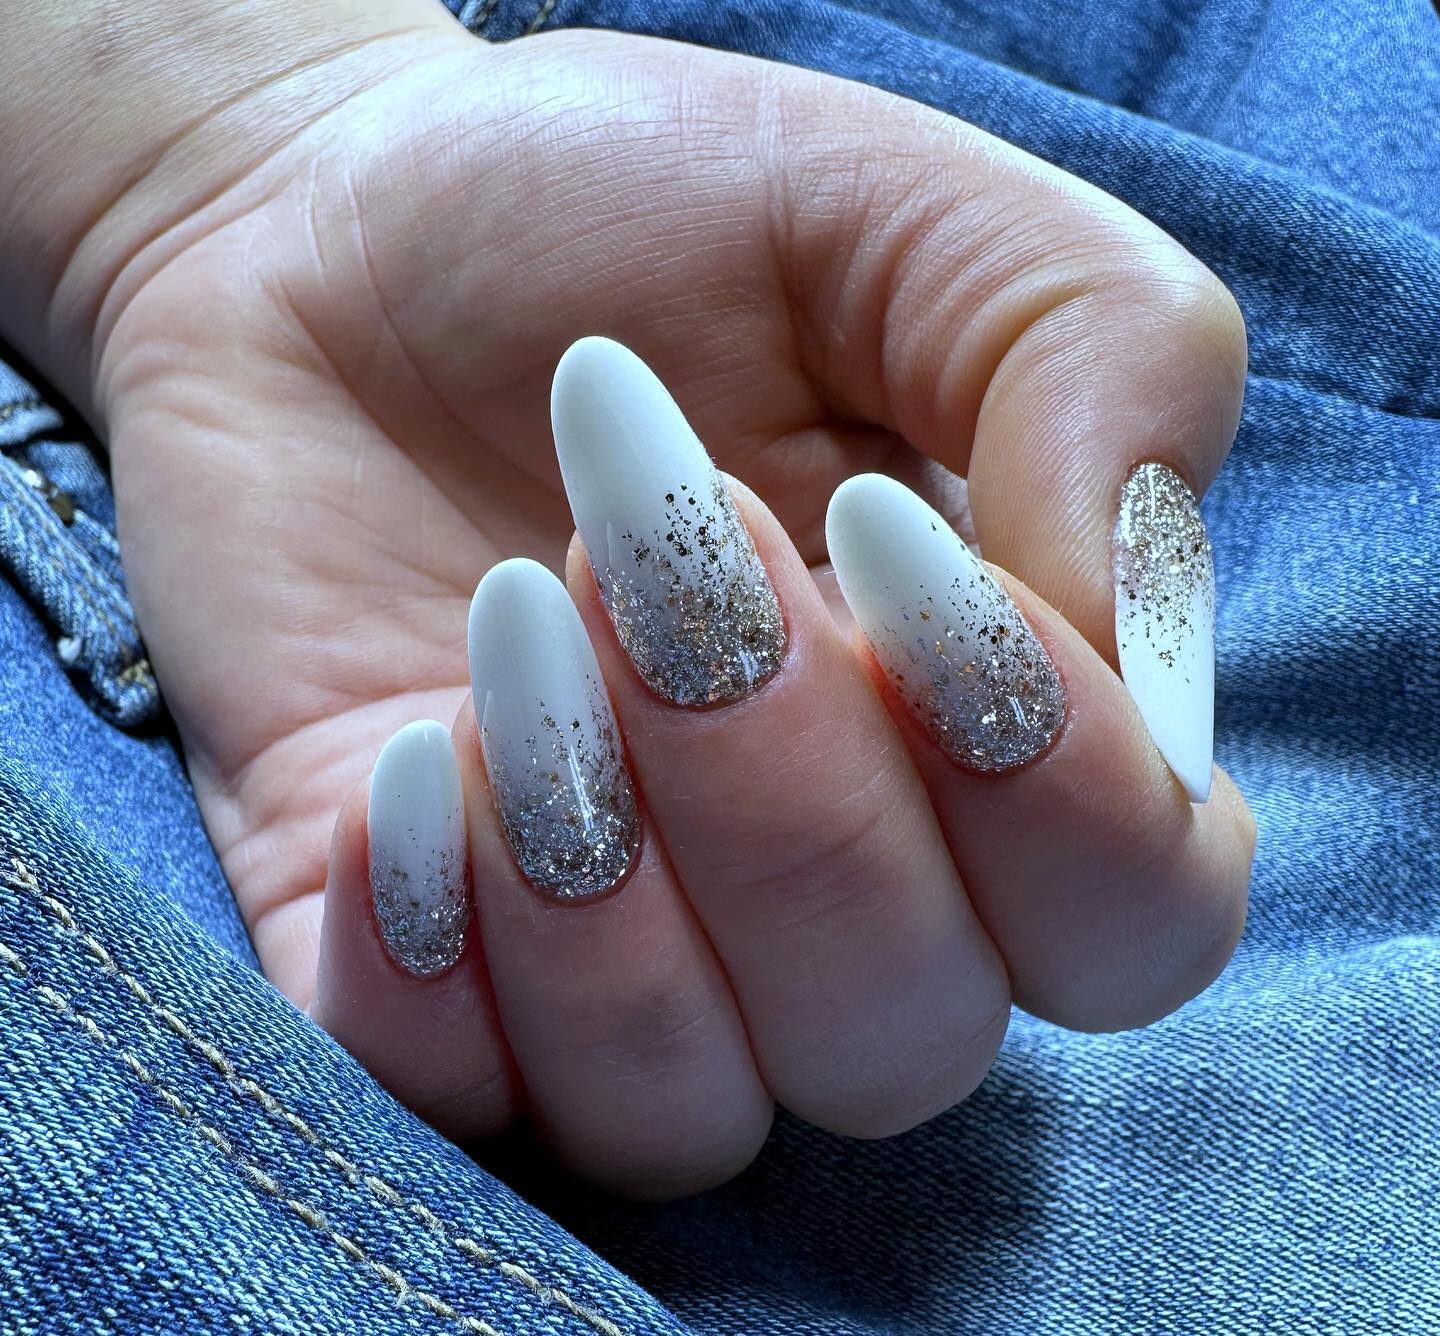 Esmalte de uñas blanco con diseño de uñas con brillos plateados en uñas largas y redondas